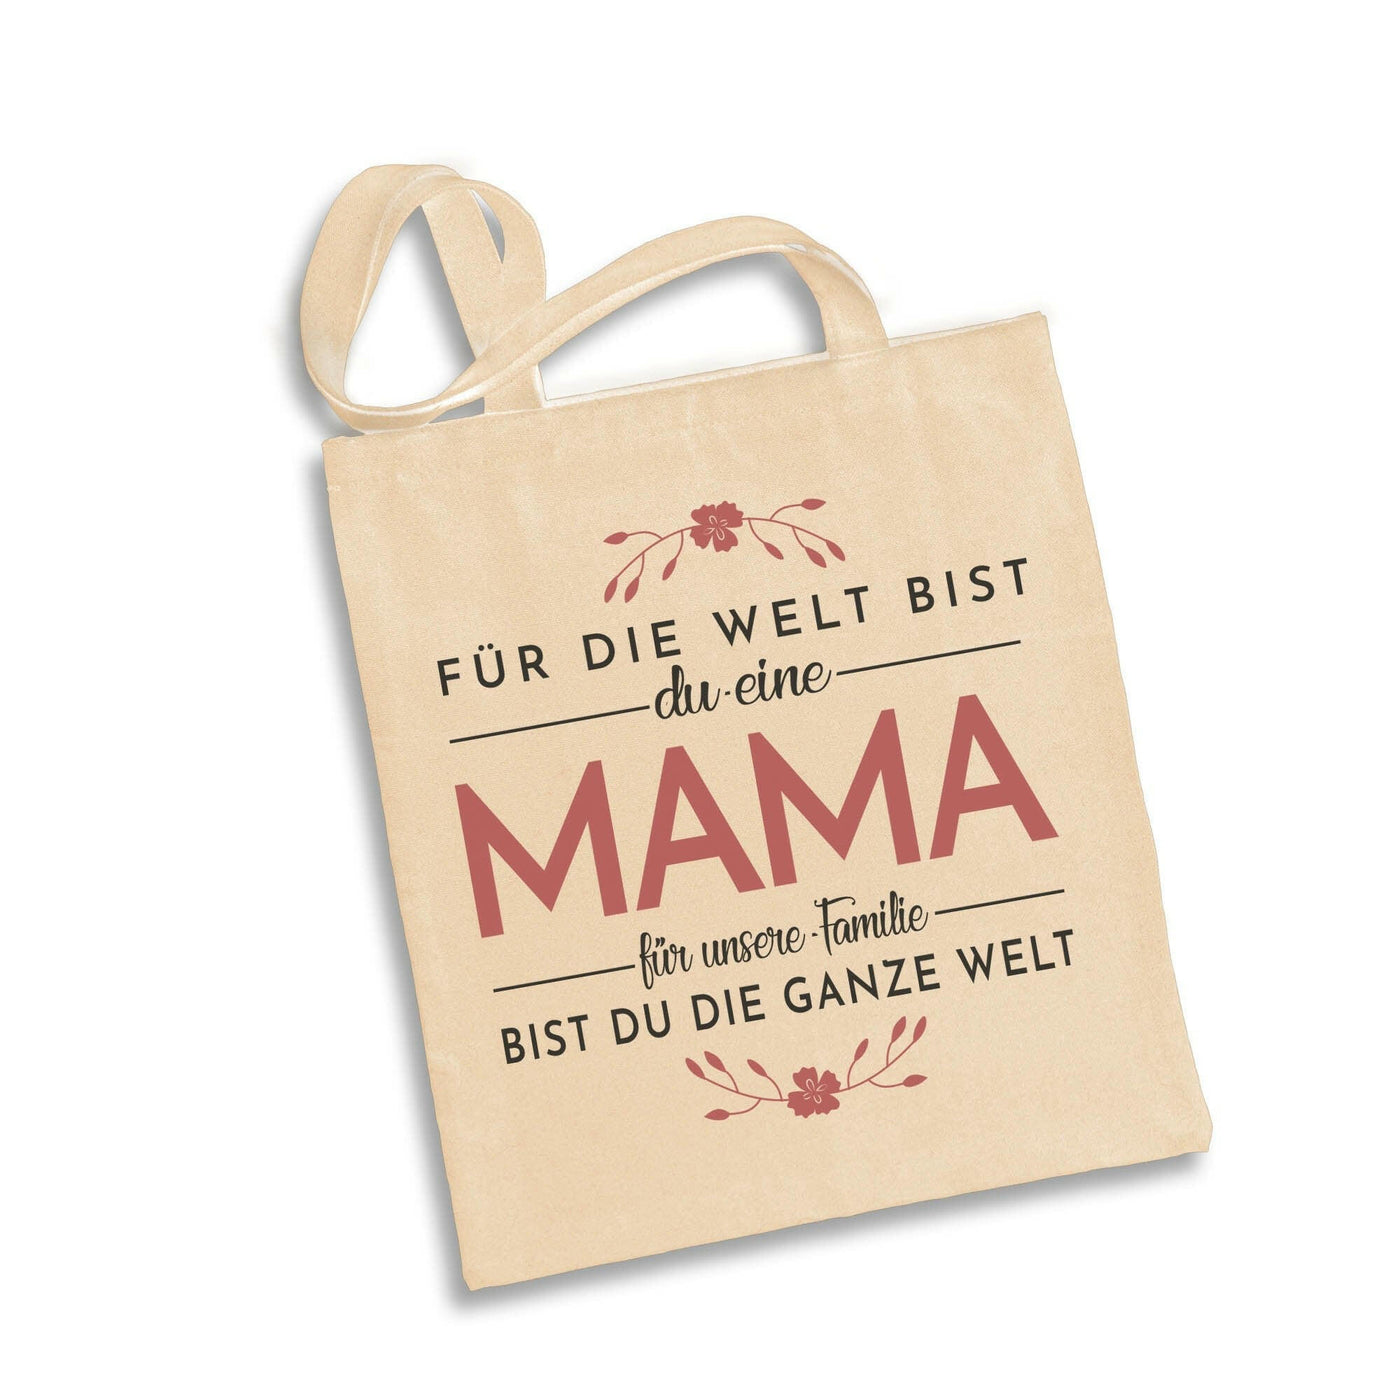 Bild: Baumwolltasche - Für die Welt bist du eine Mama - für unsere Familie bist du die ganze Welt. Geschenkidee